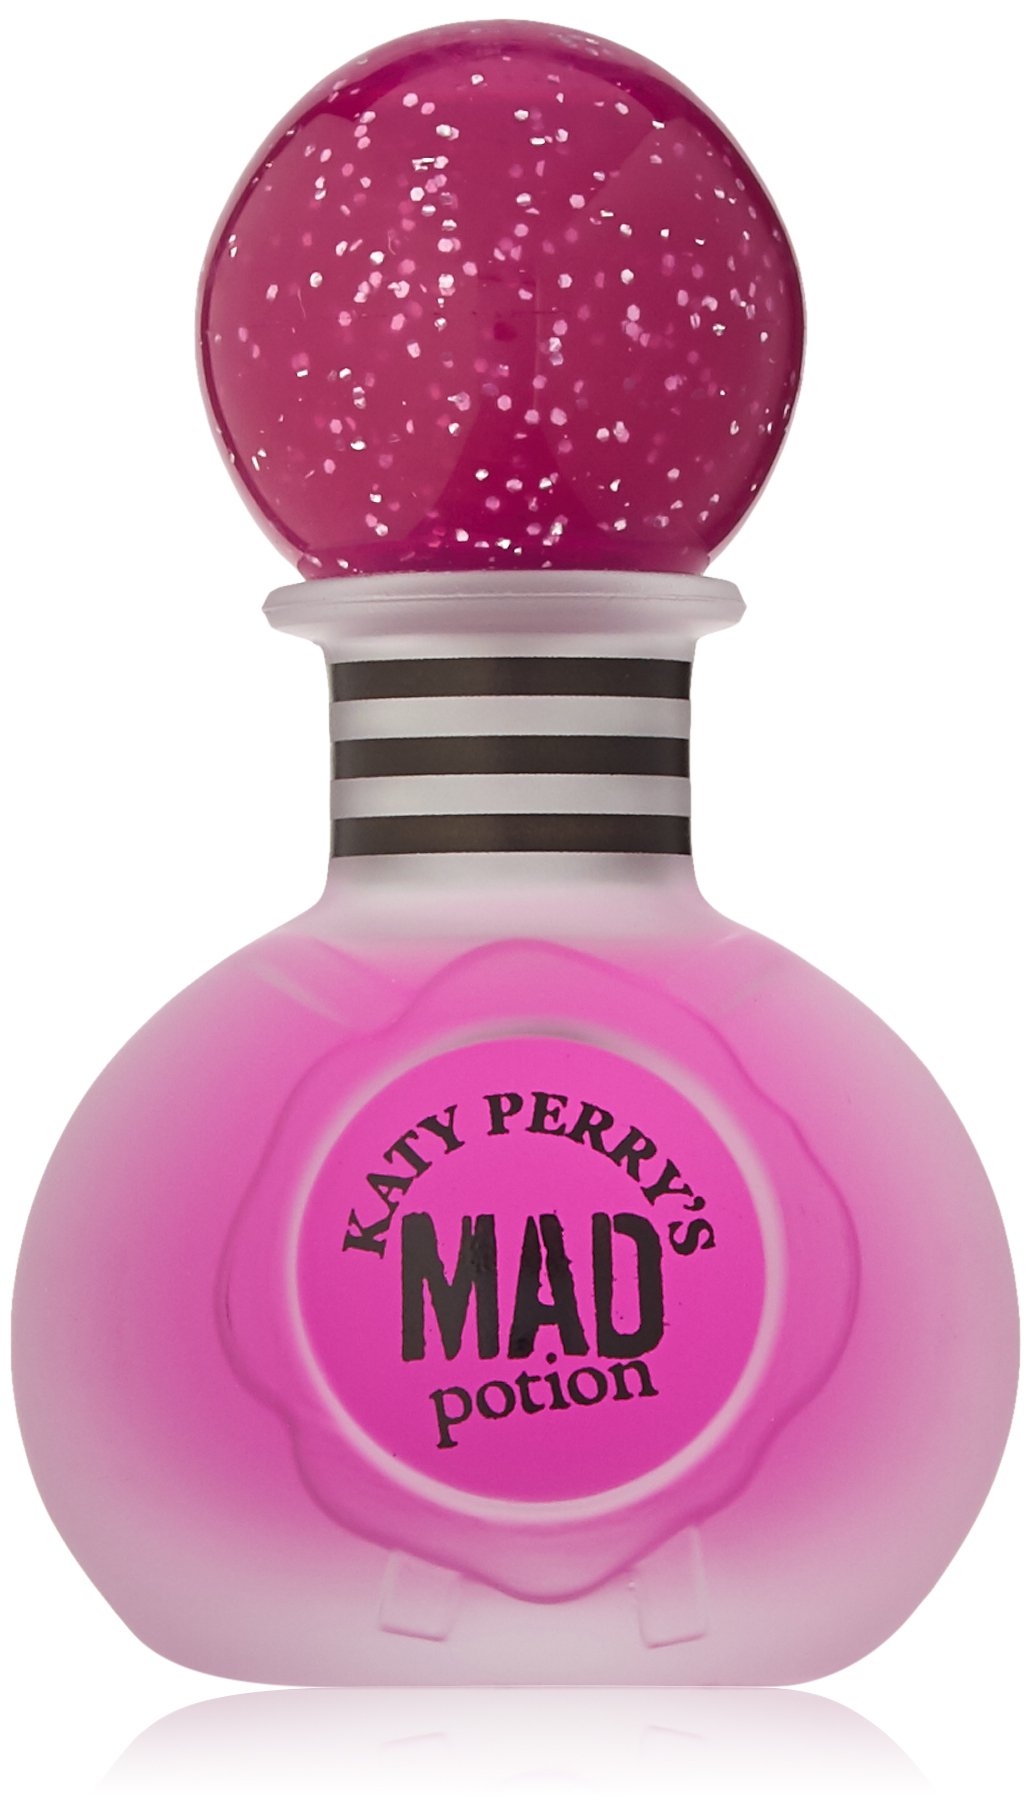 Katy Perry Mad Potion Eau De Parfums, 1 Fluid Ounce